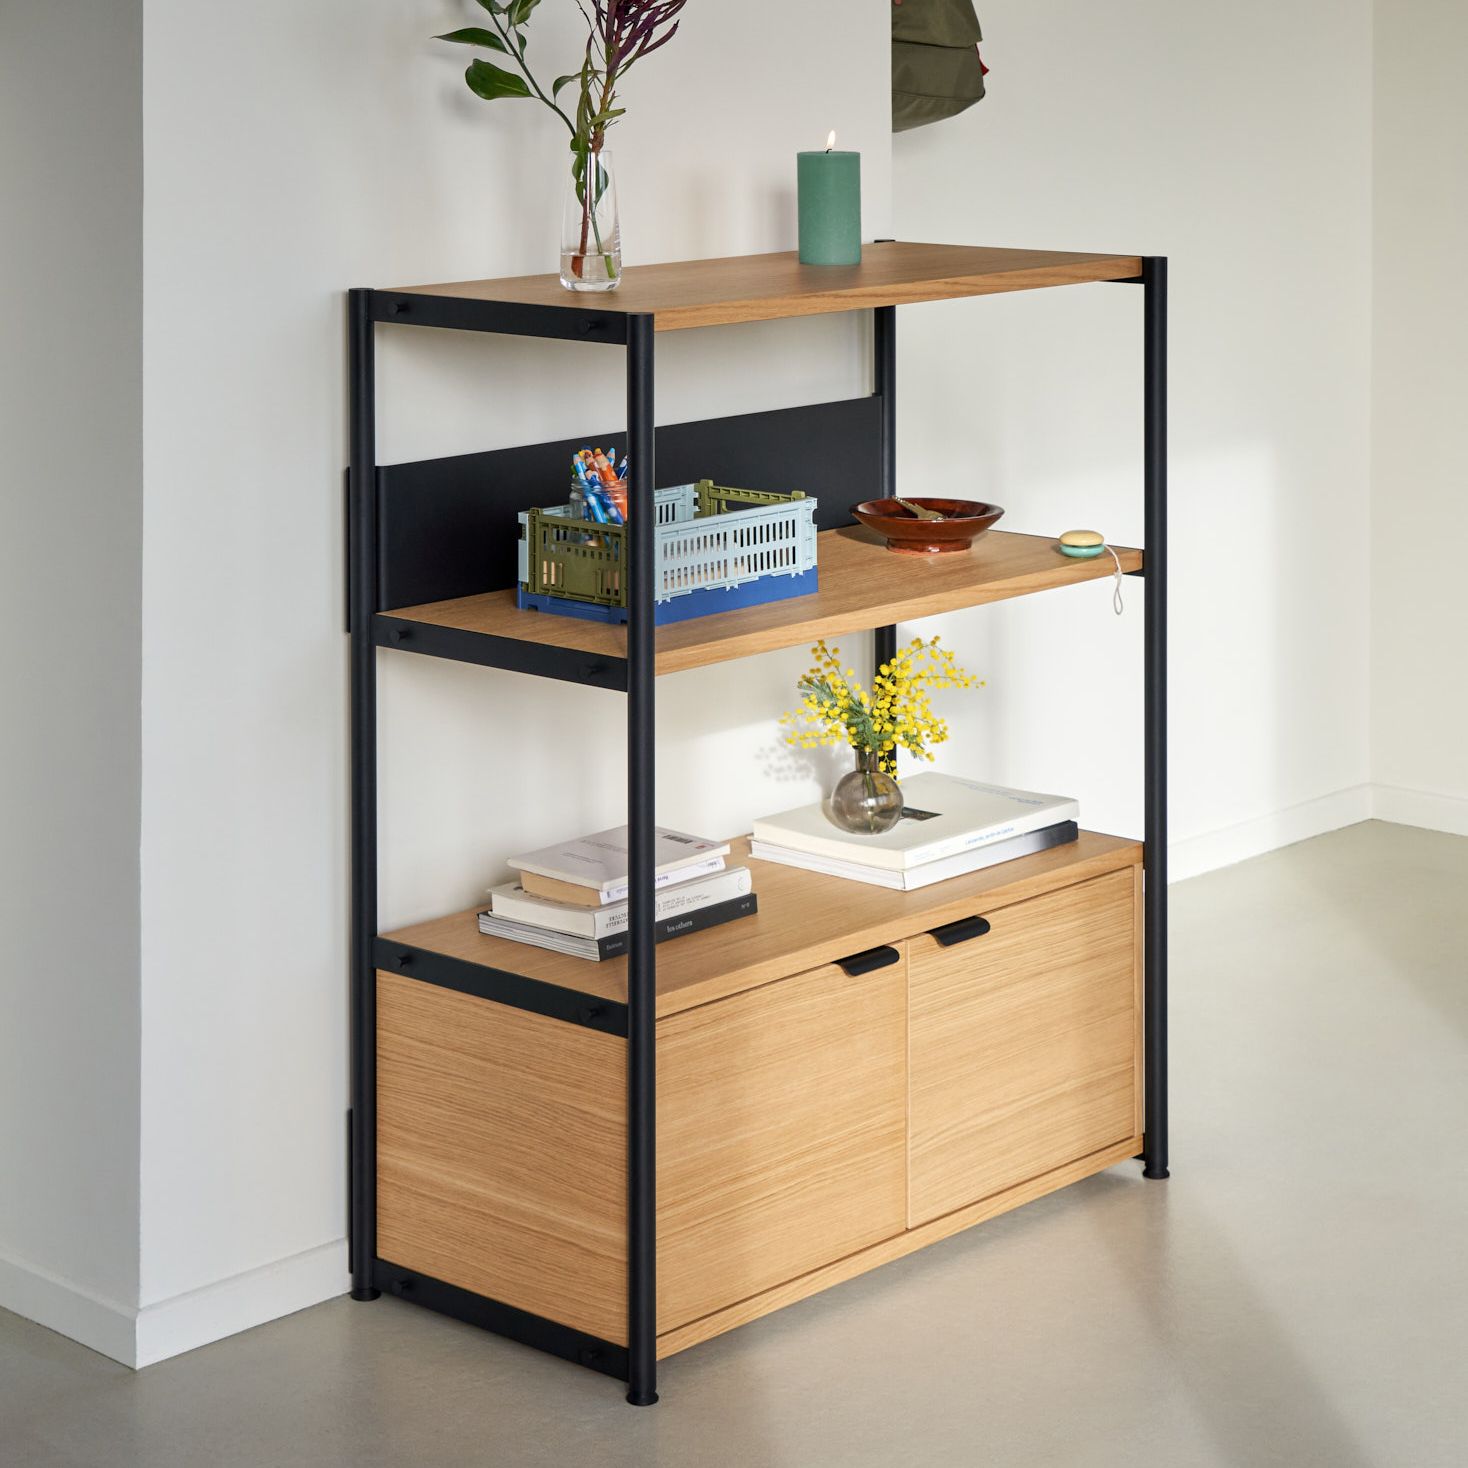 UNIT shelf - H110 x W84cm - eco-certified wood